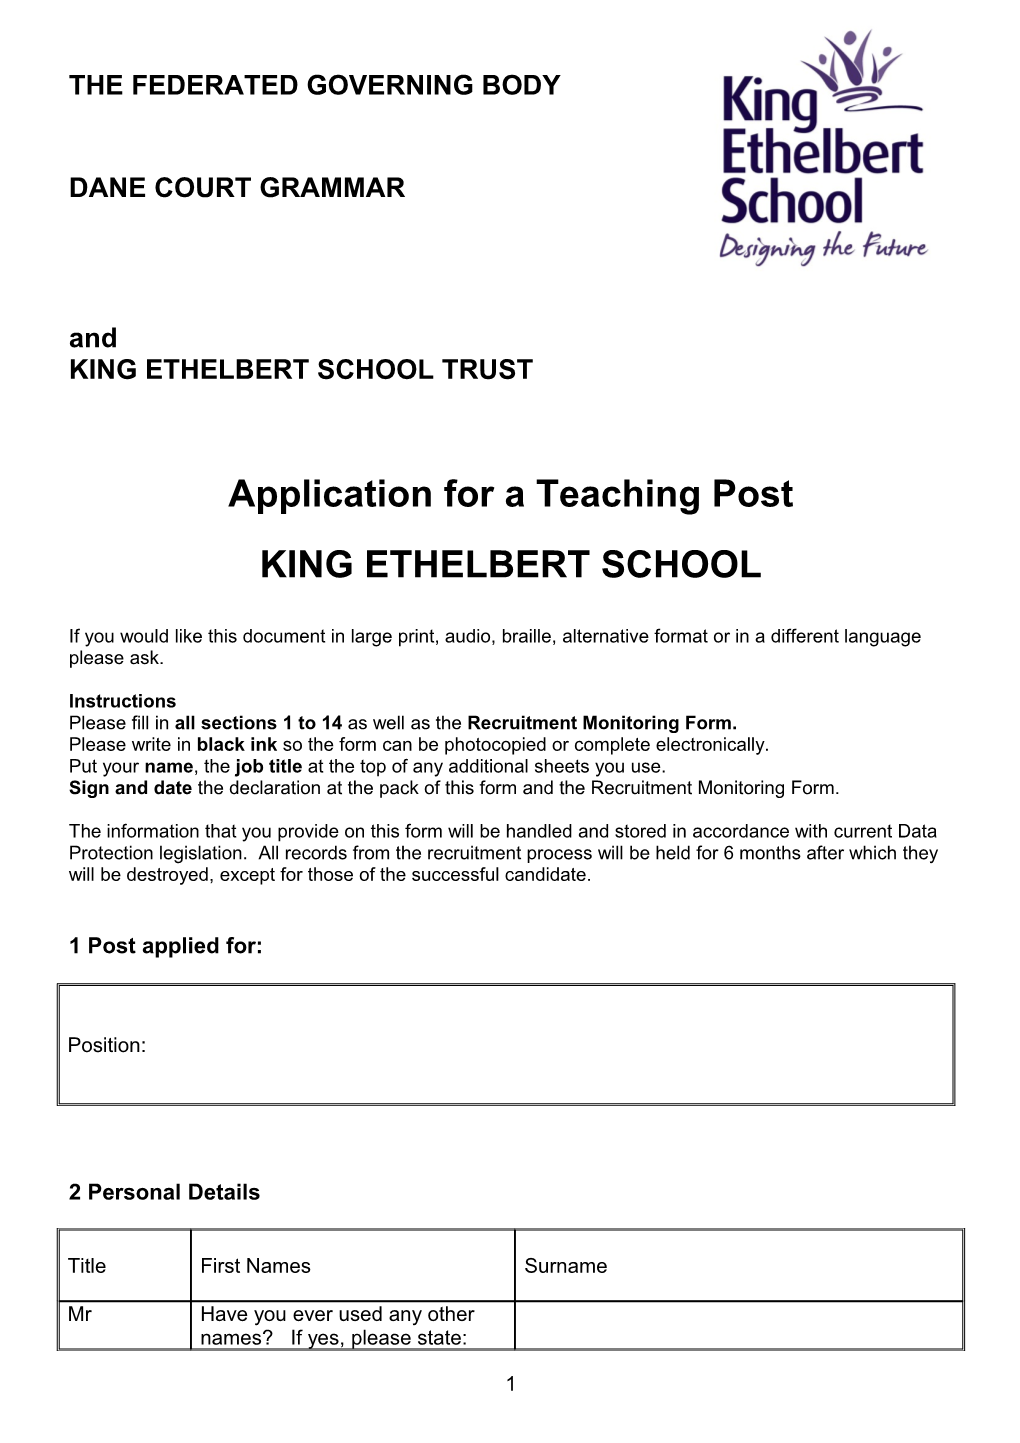 King Ethelbert School Trust